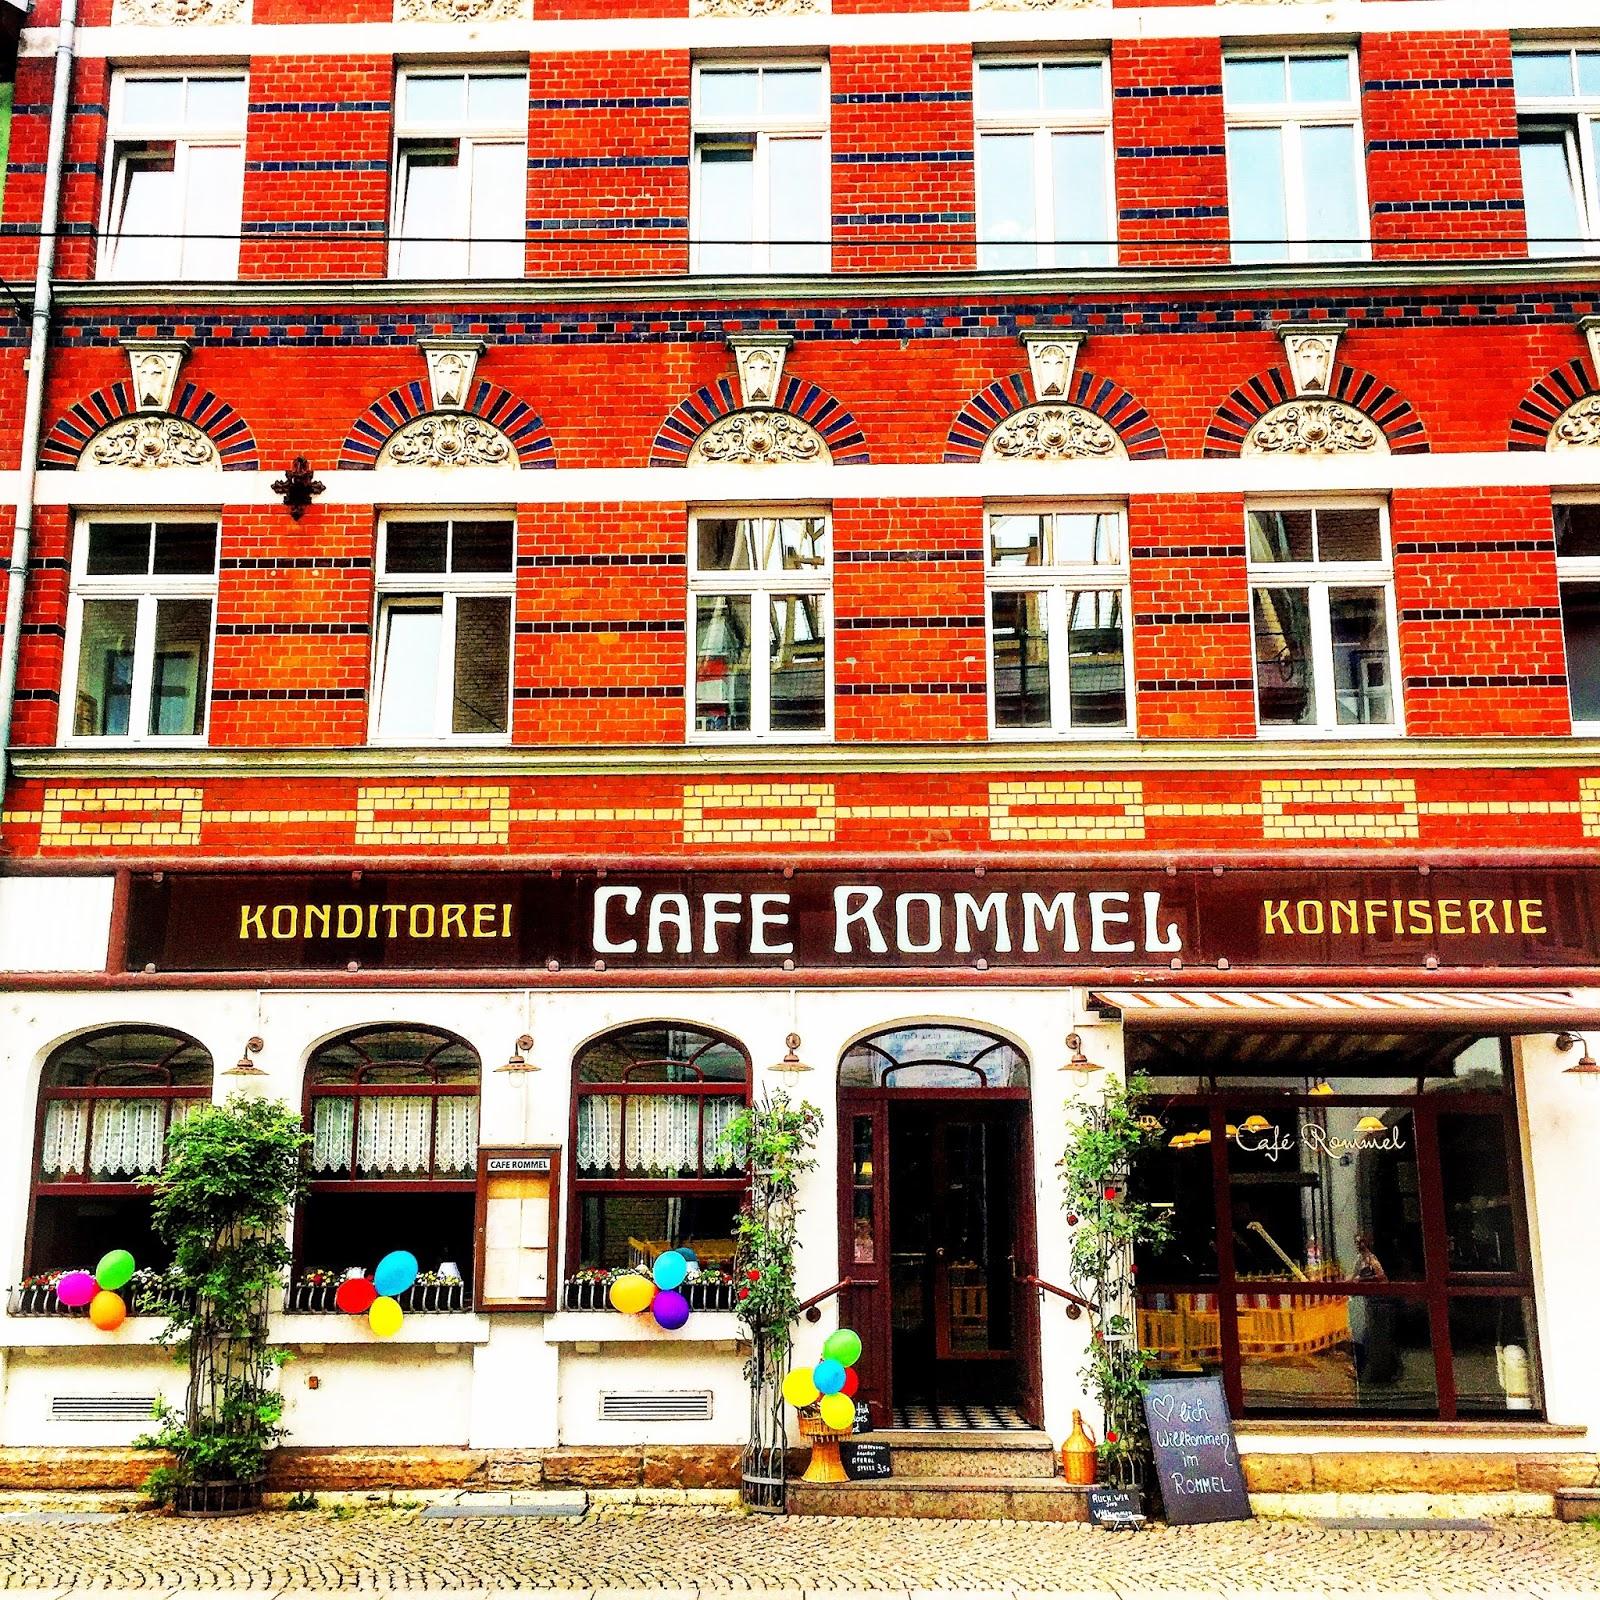 Restaurant "Café Rommel" in Erfurt